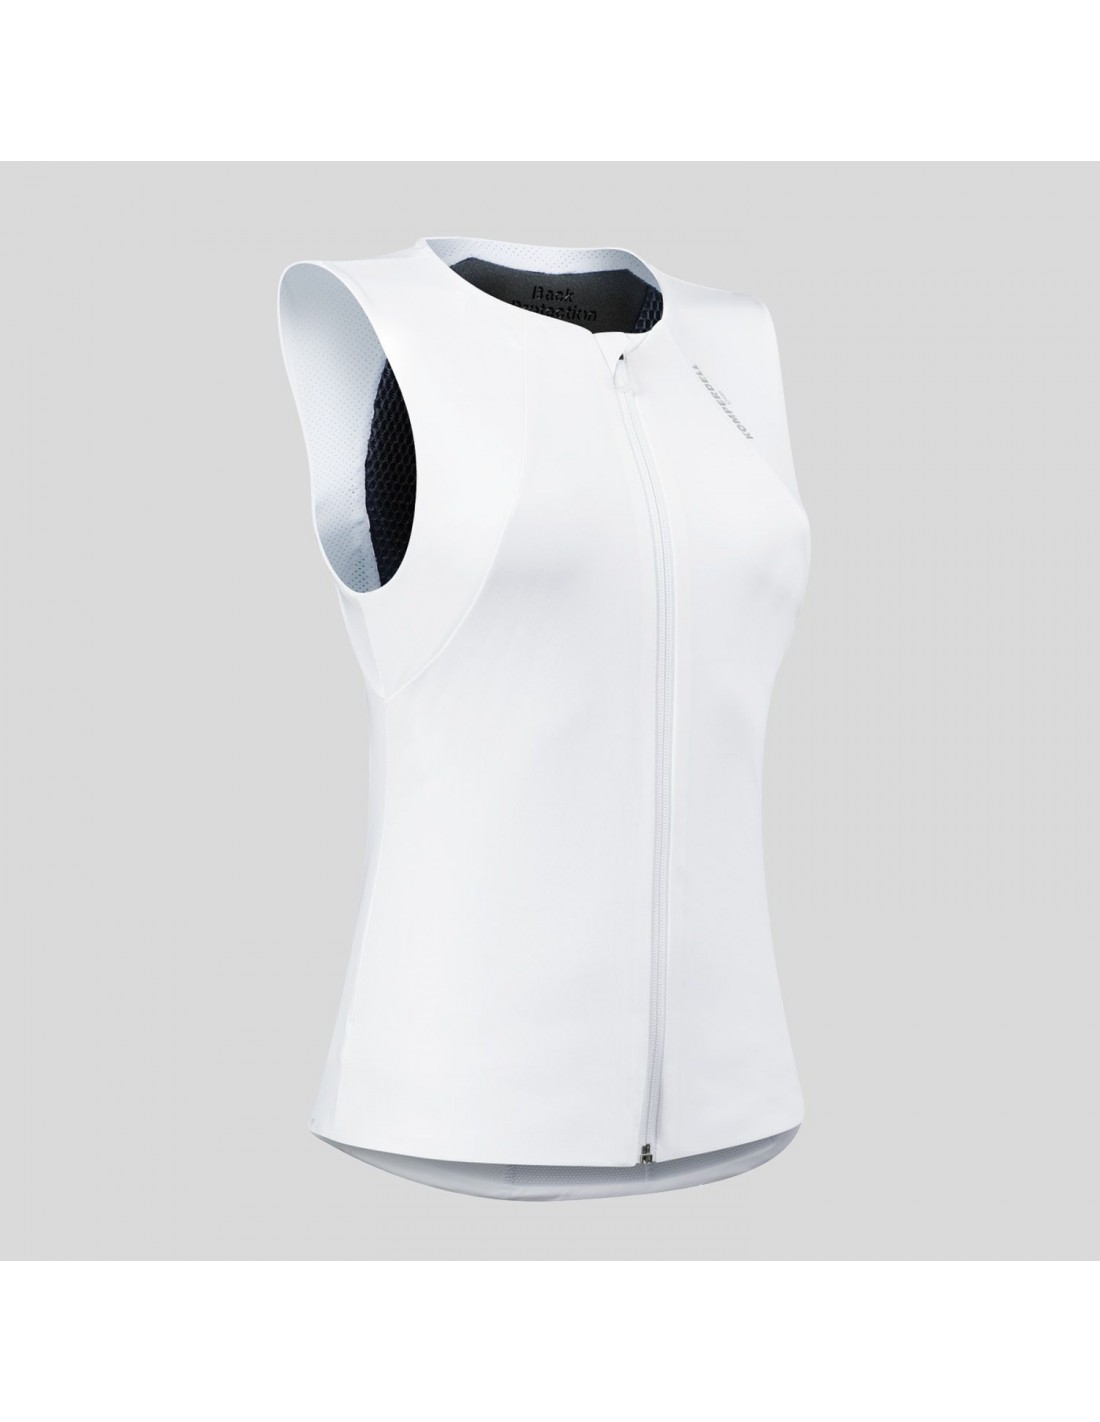 Komperdell Rückenprotektor Air Vest Women White Protektorvariante - Rückenprotektoren inkl. Weste, Protektorgröße - XXS, von Komperdell